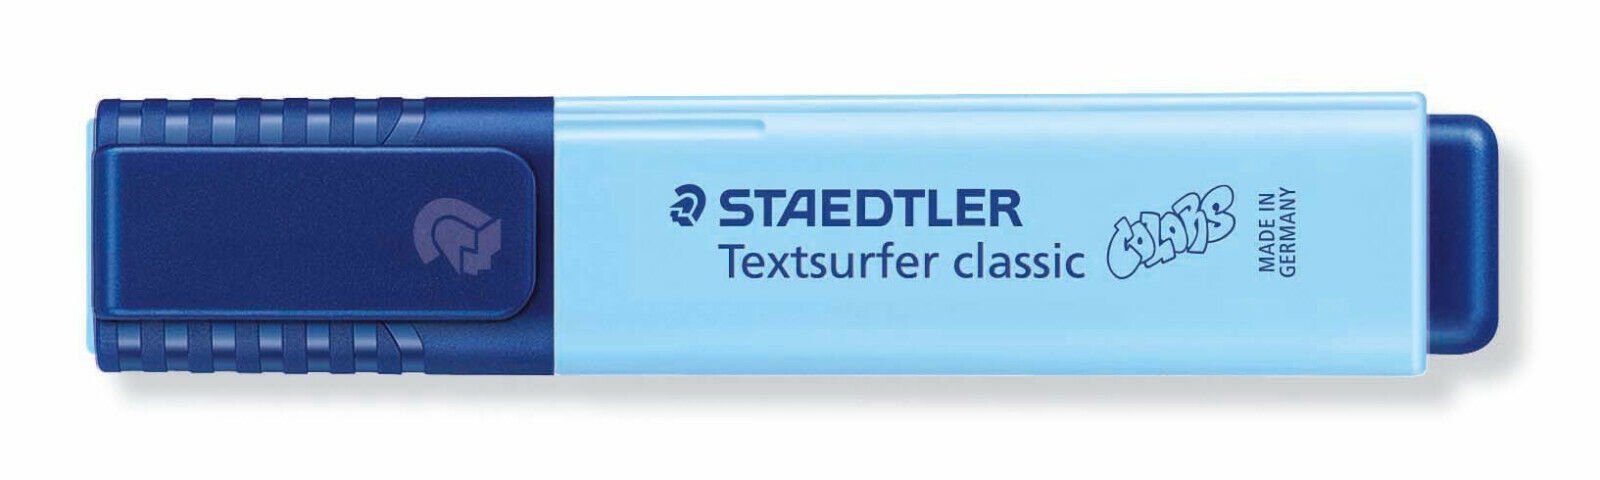 STAEDTLER Marker Staedtler colors INK SAFE Textsurfer JET Leuchtstift, himmelblau C-305 364 classic